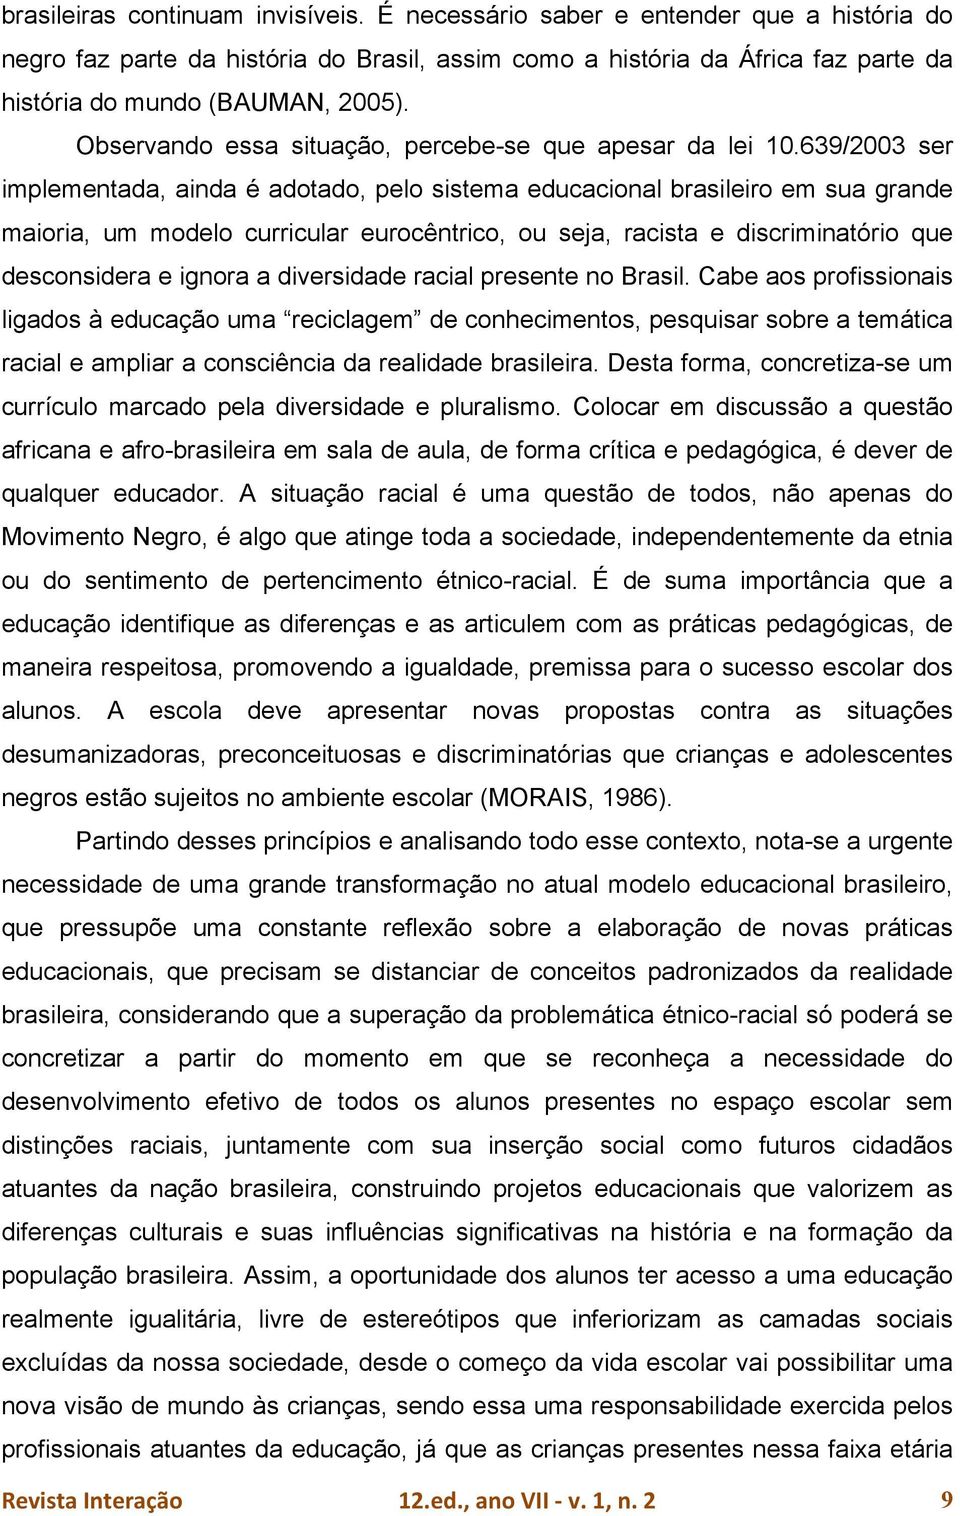 639/2003 ser implementada, ainda é adotado, pelo sistema educacional brasileiro em sua grande maioria, um modelo curricular eurocêntrico, ou seja, racista e discriminatório que desconsidera e ignora